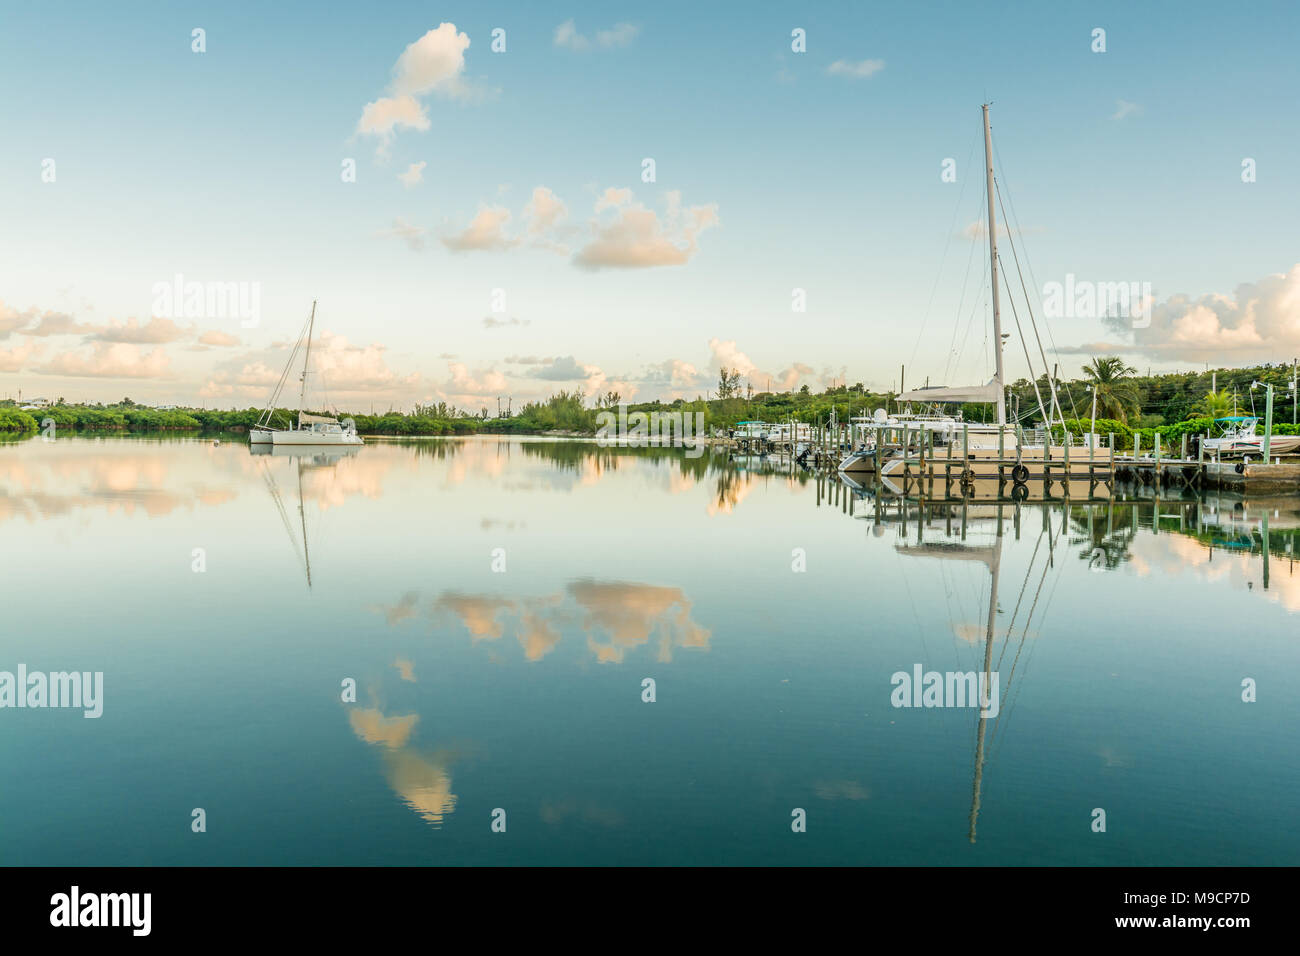 Salz Wasser See an einem schönen sonnigen windstillen Tag übersicht Segelboote mit Spiegel Reflexion auf See Wasser und Mangroven auf dem Hintergrund Stockfoto